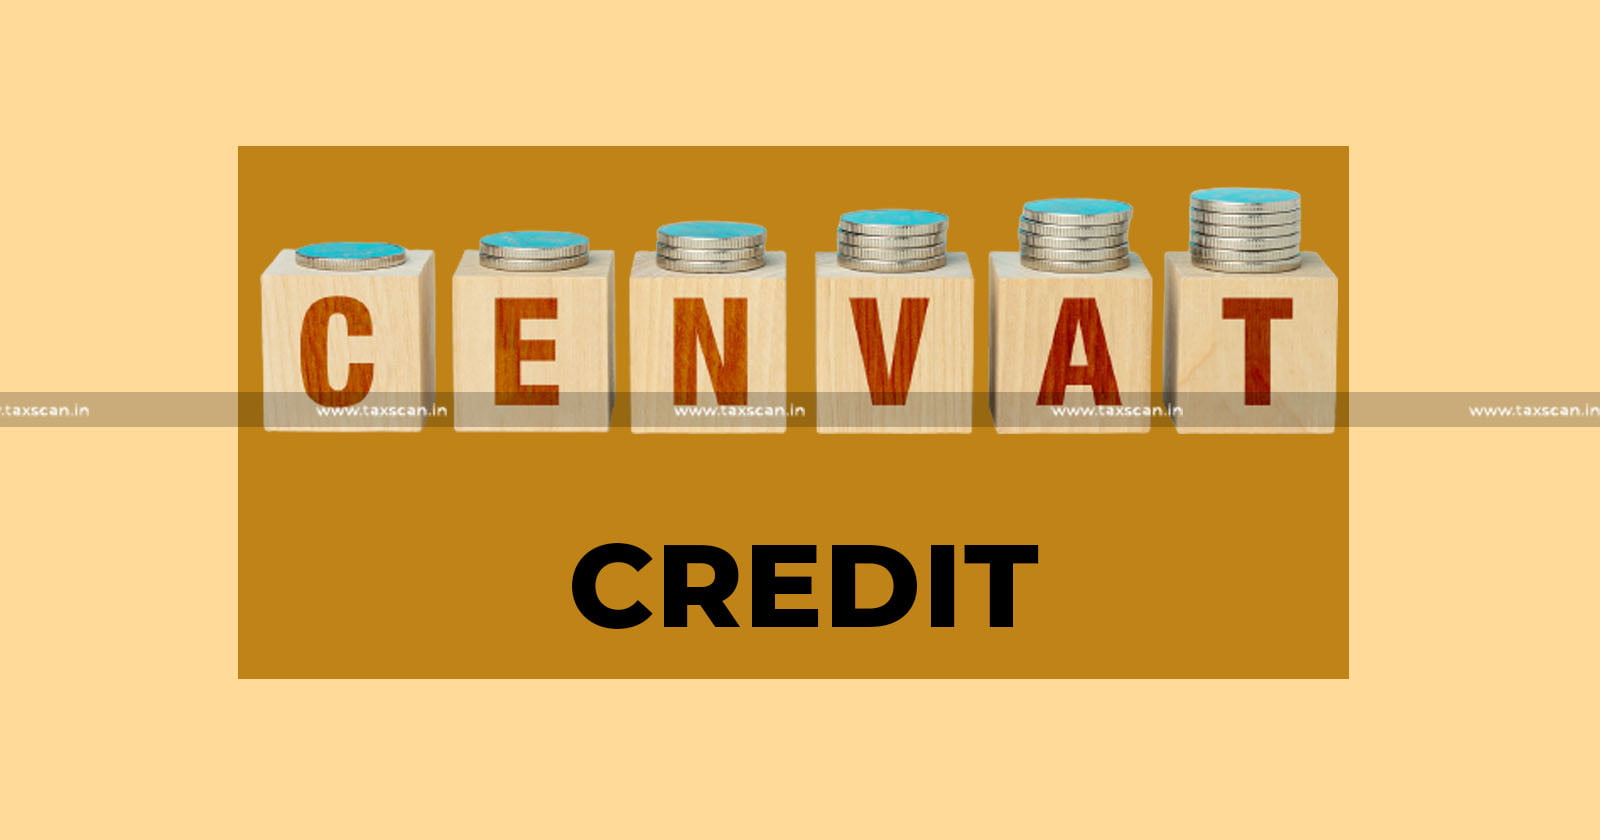 Excisable Goods - Input Services - CENVAT credit - CESTAT - taxscan